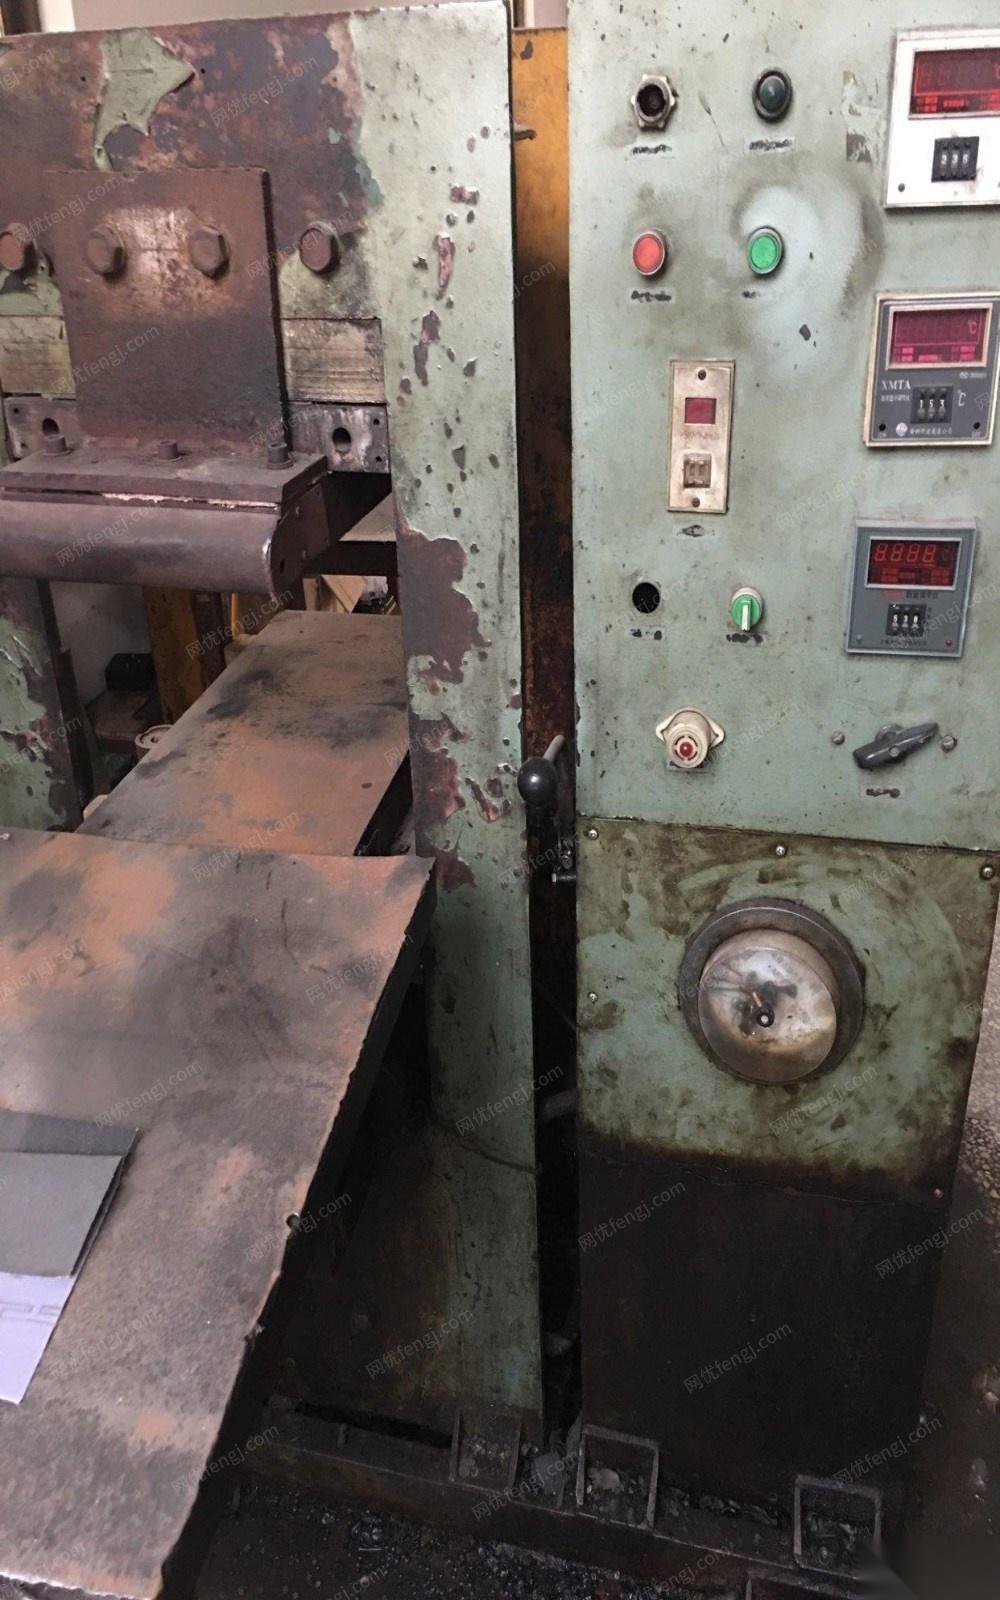 江苏盐城个人闲置2台硫化机和1台炼胶机 出售50000元